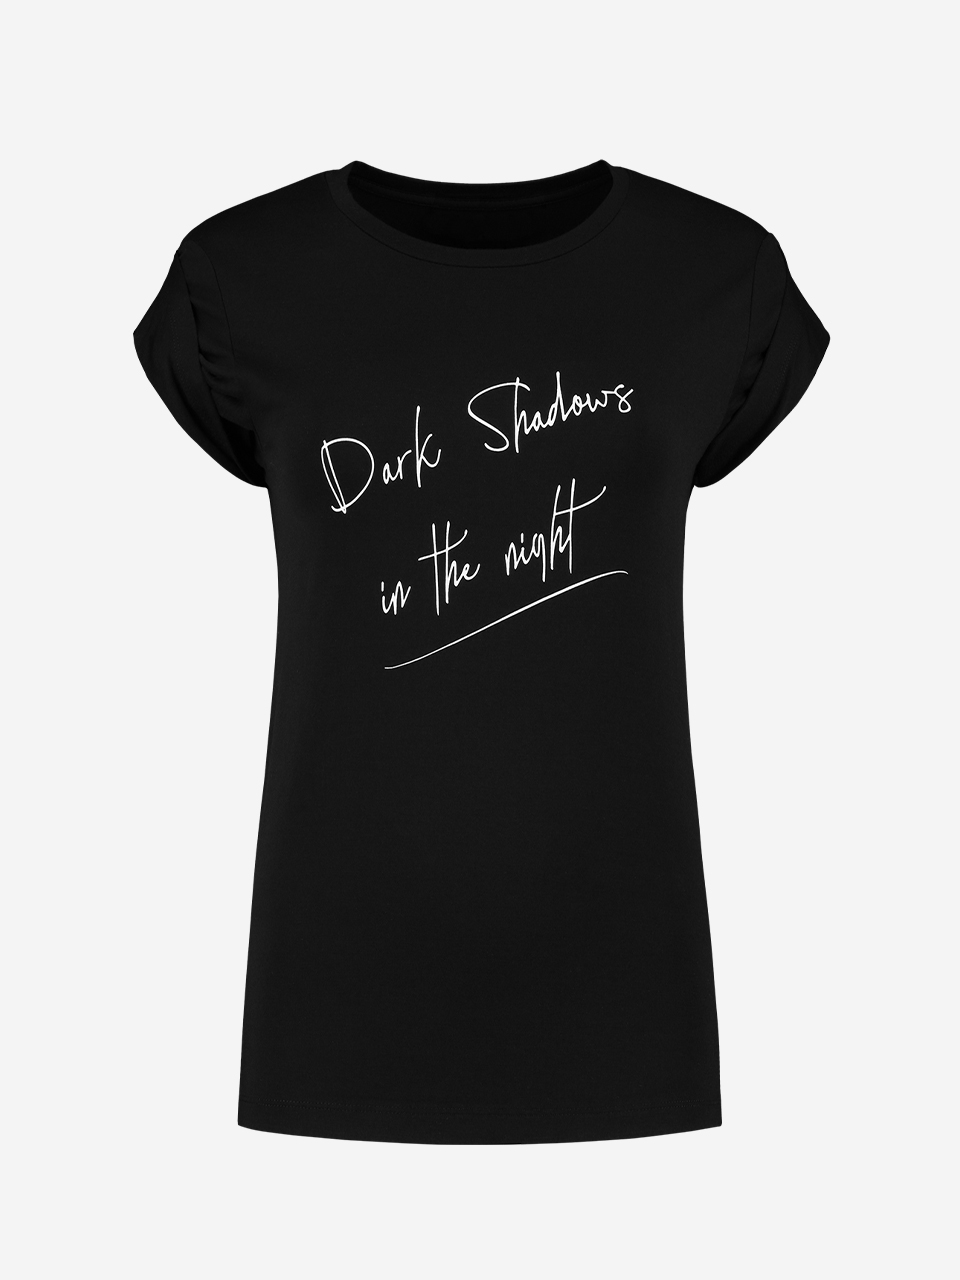 Dark Shadows T-Shirt